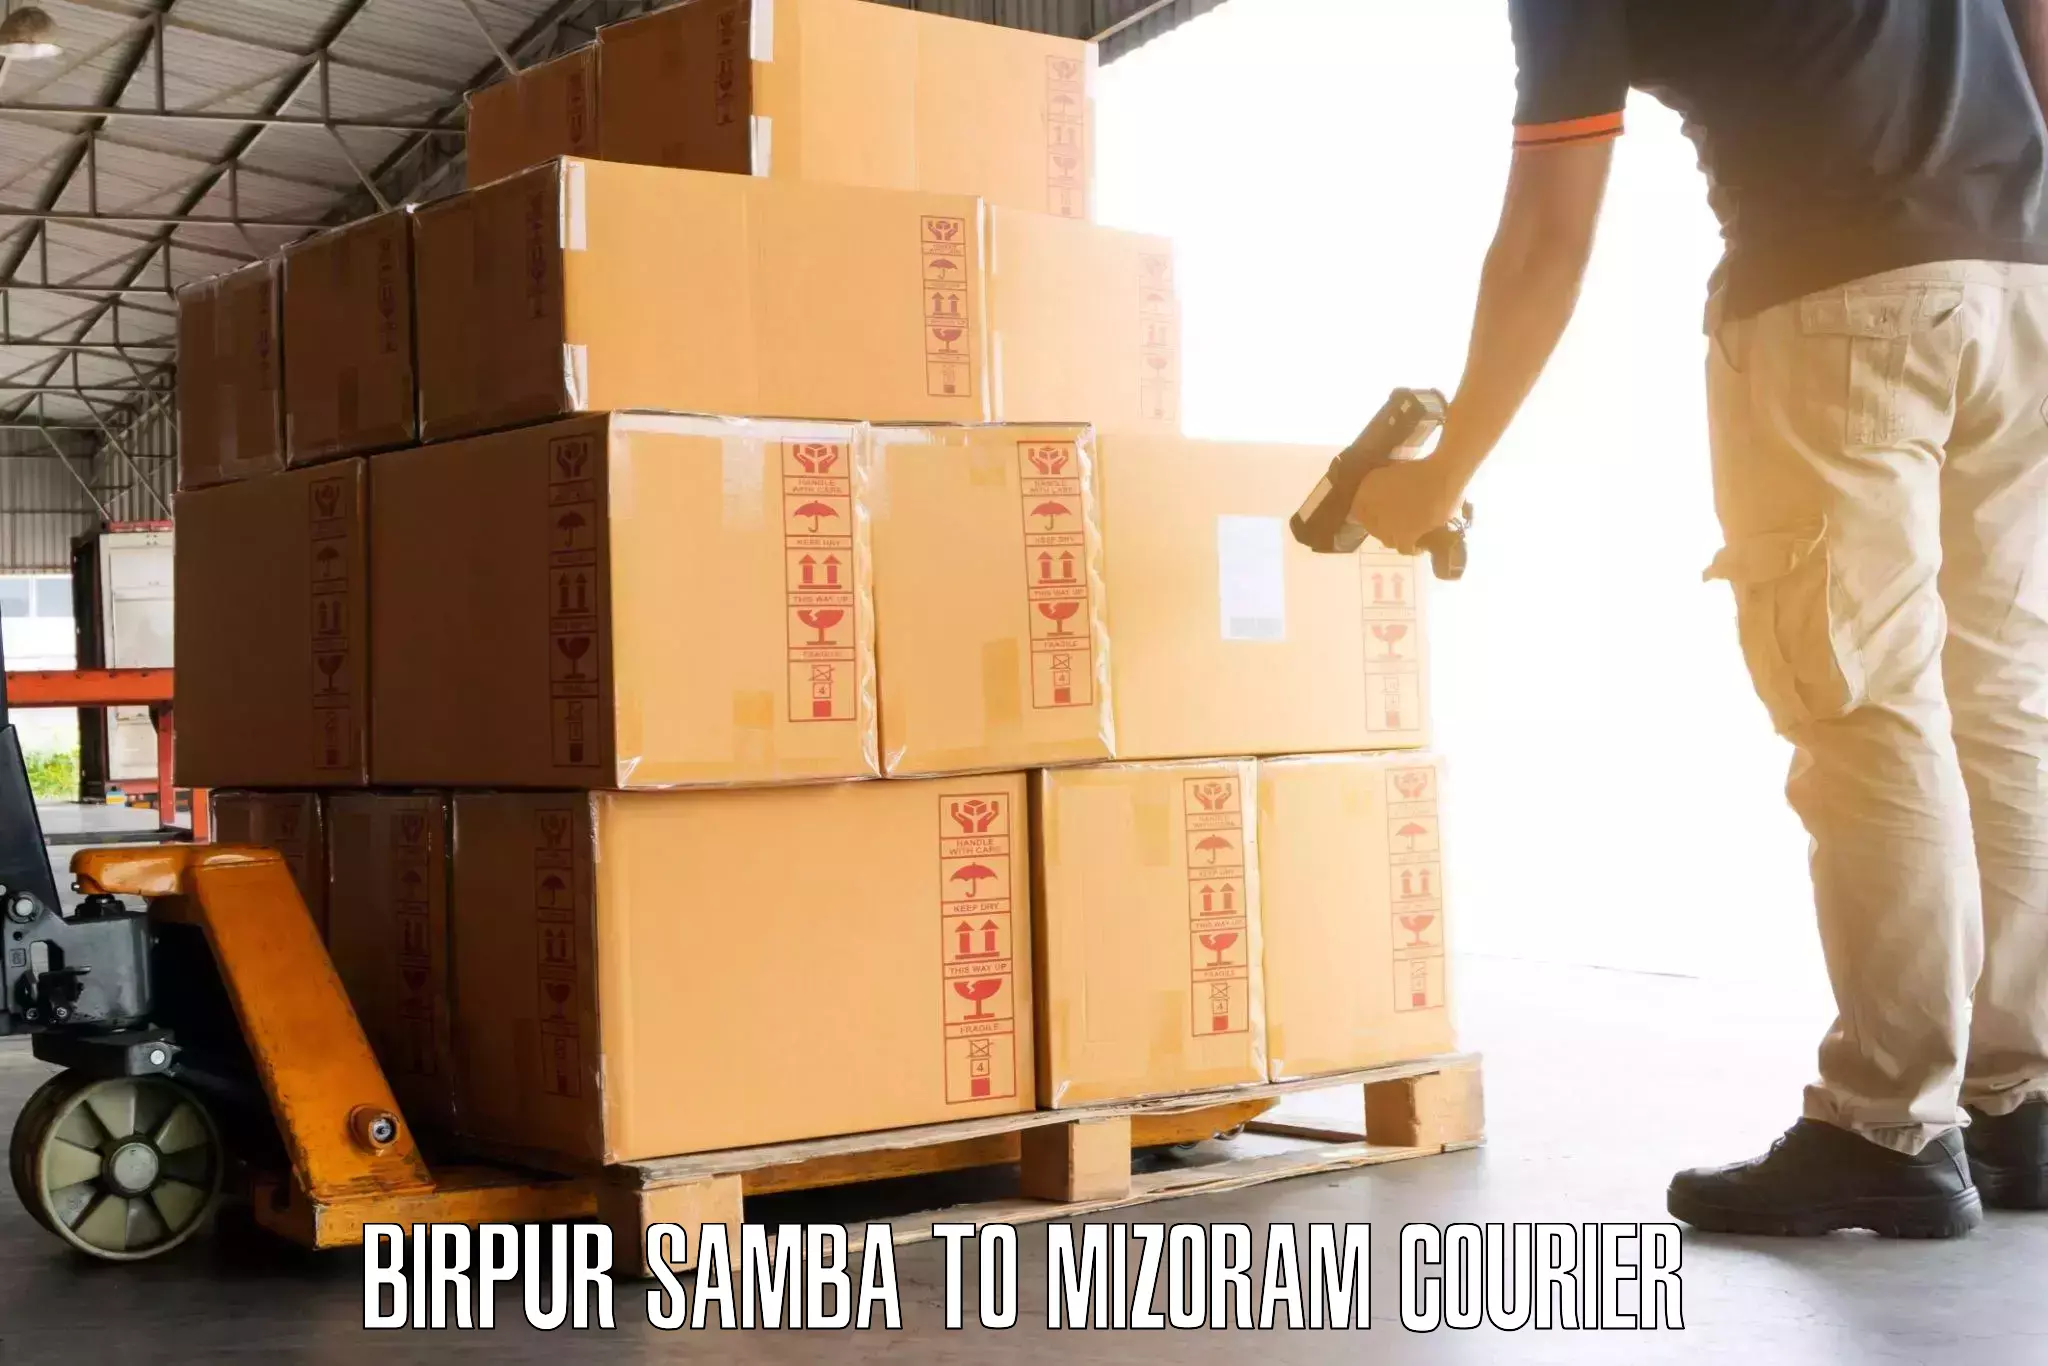 Door-to-door baggage service Birpur Samba to Siaha